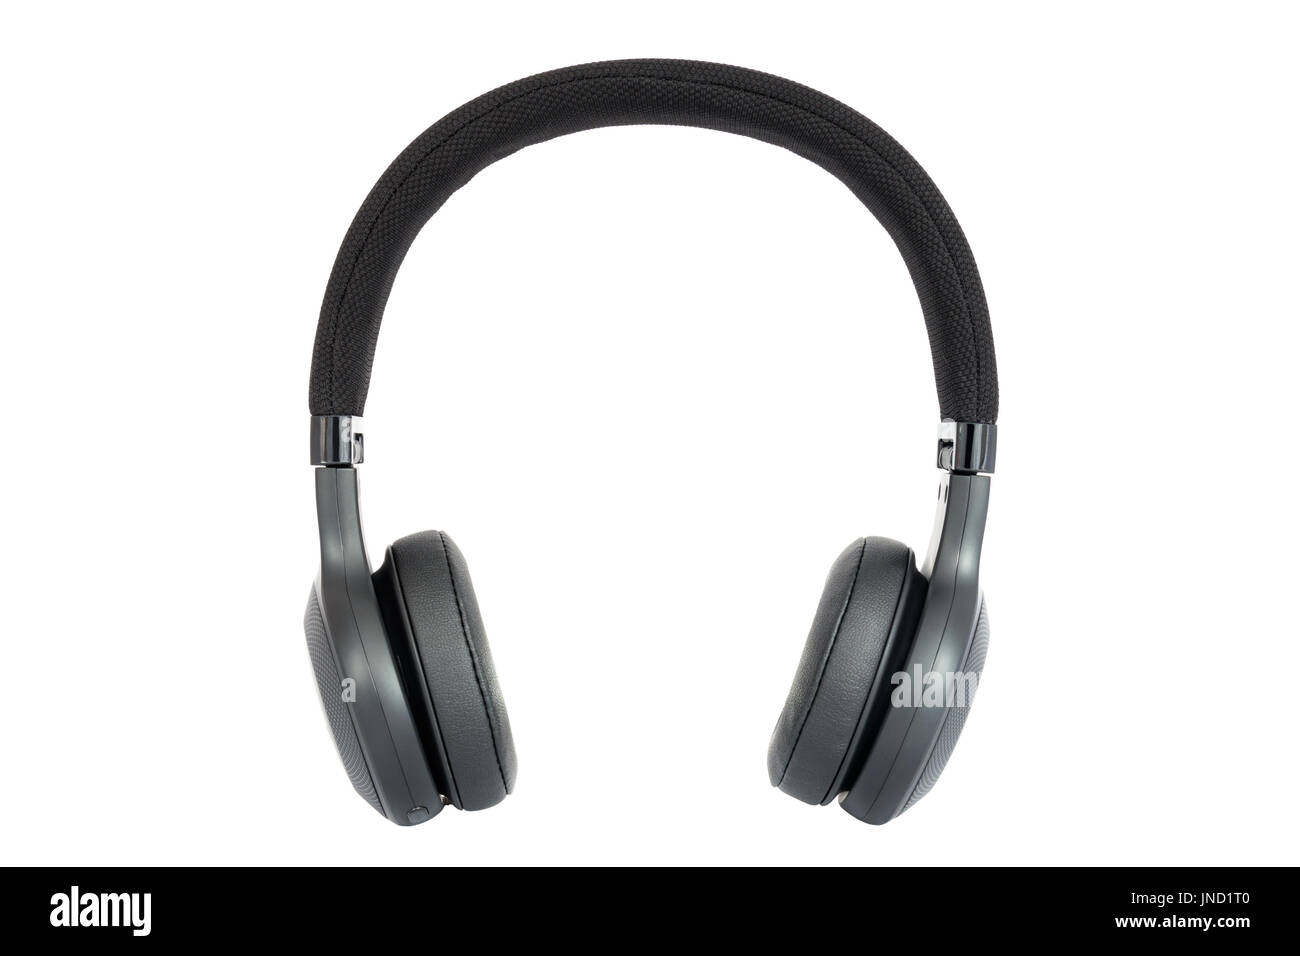 Kopfhörer. Isolierte schwarz Kopfhörer. Ansicht von vorne. Isoliert auf weißem Hintergrund Stockfoto